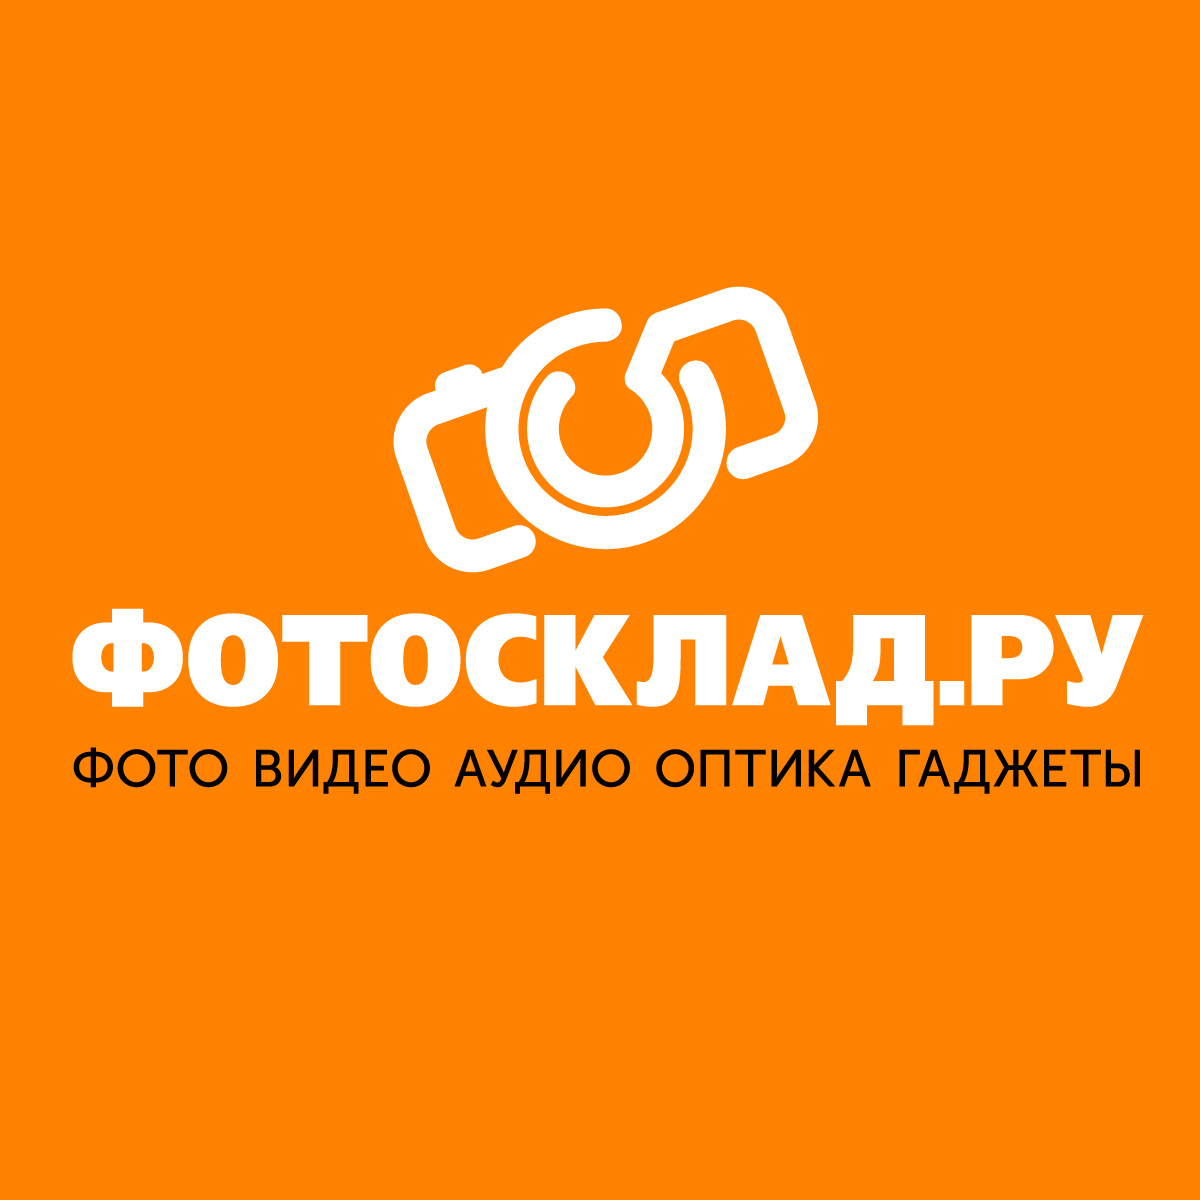 Магазин Fotosklad Ru